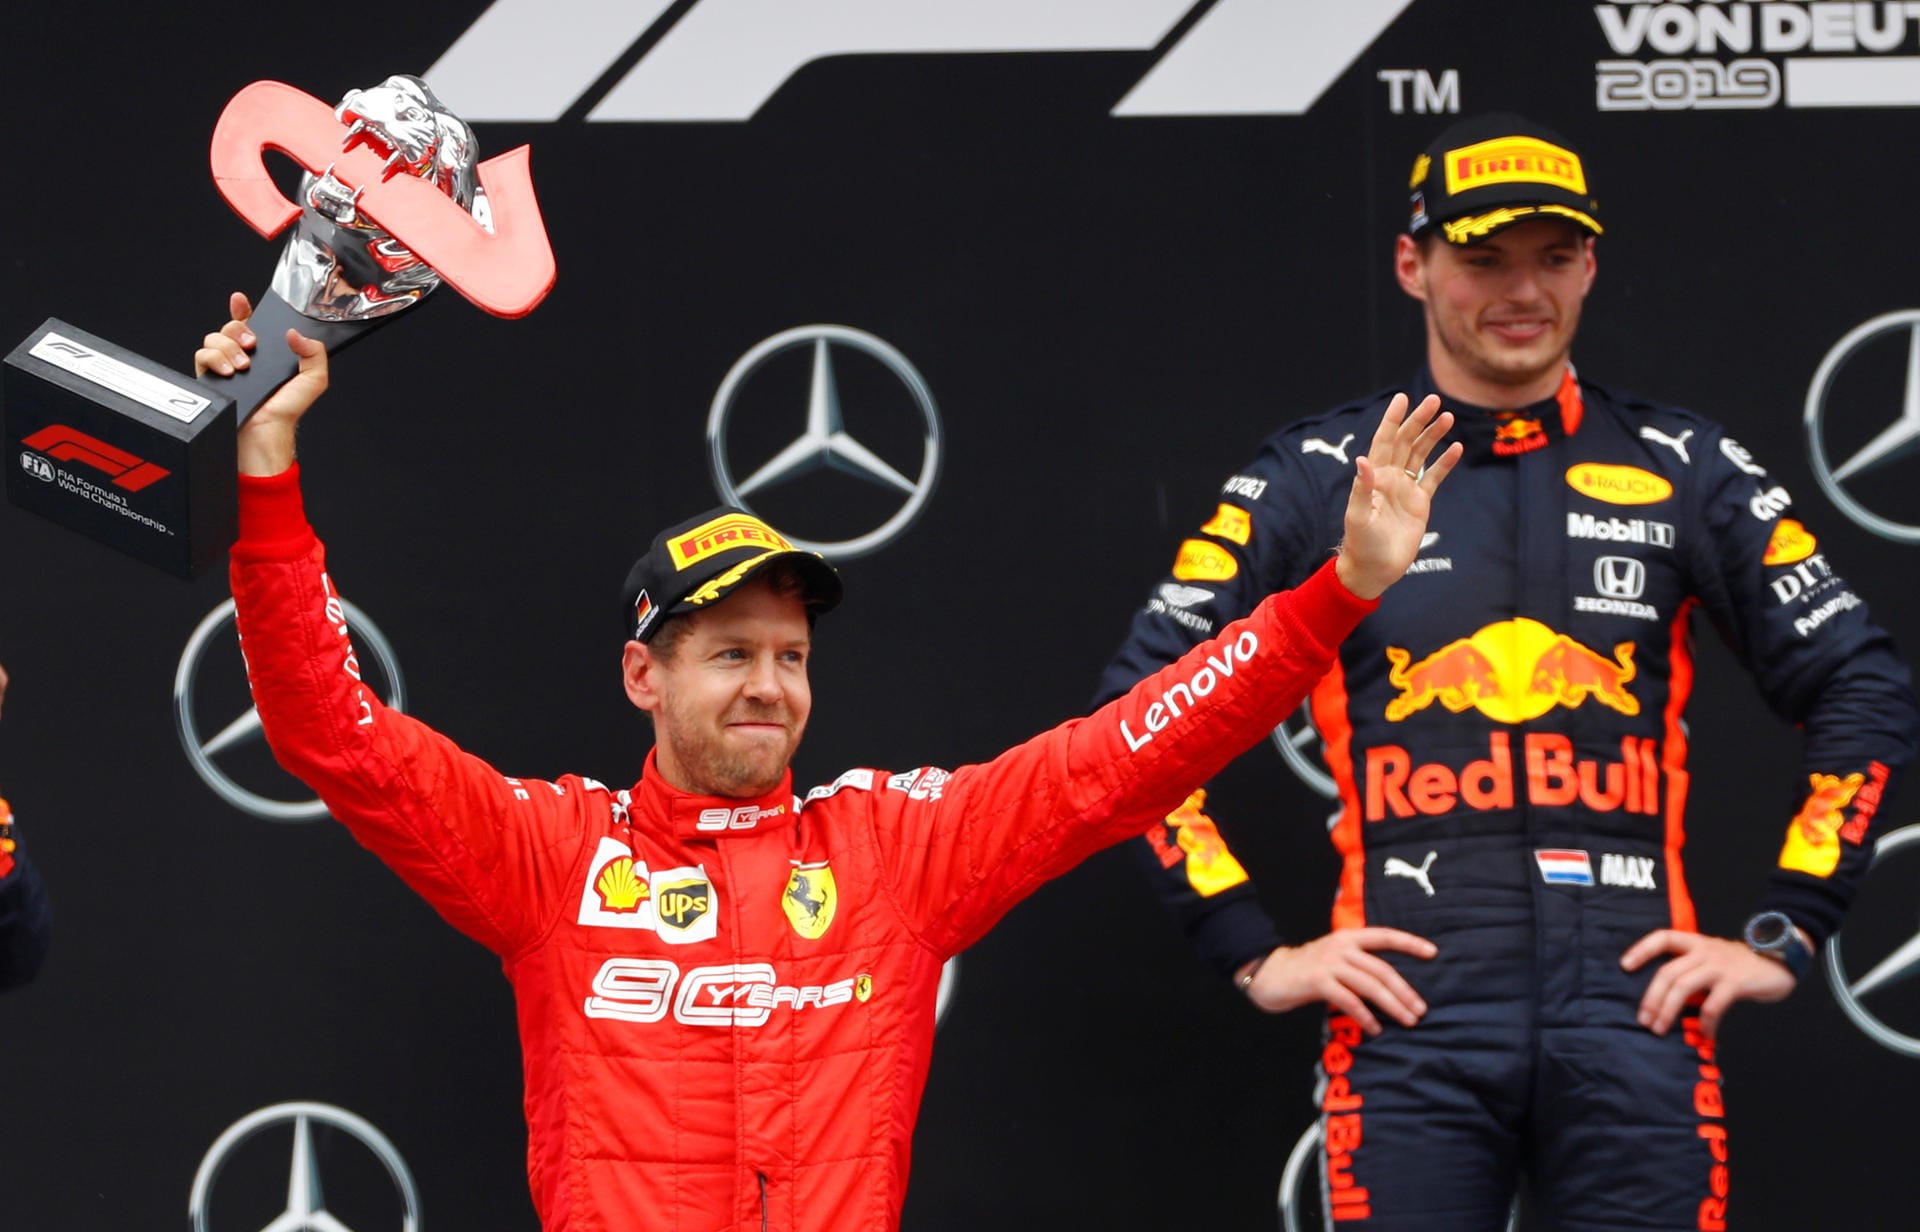 Sebastian Vettel startete auf dem letzten Platz und wurde beim Rennen in Hockenheim am Ende starker Zweiter. Der deutsche Ferrari-Pilot musste sich bei der Regen-Schlacht am Hockenheimring lediglich dem Niederländer Max Verstappen (r.) geschlagen geben. Die internationalen Pressestimmen zum Großen Preis von Deutschland.